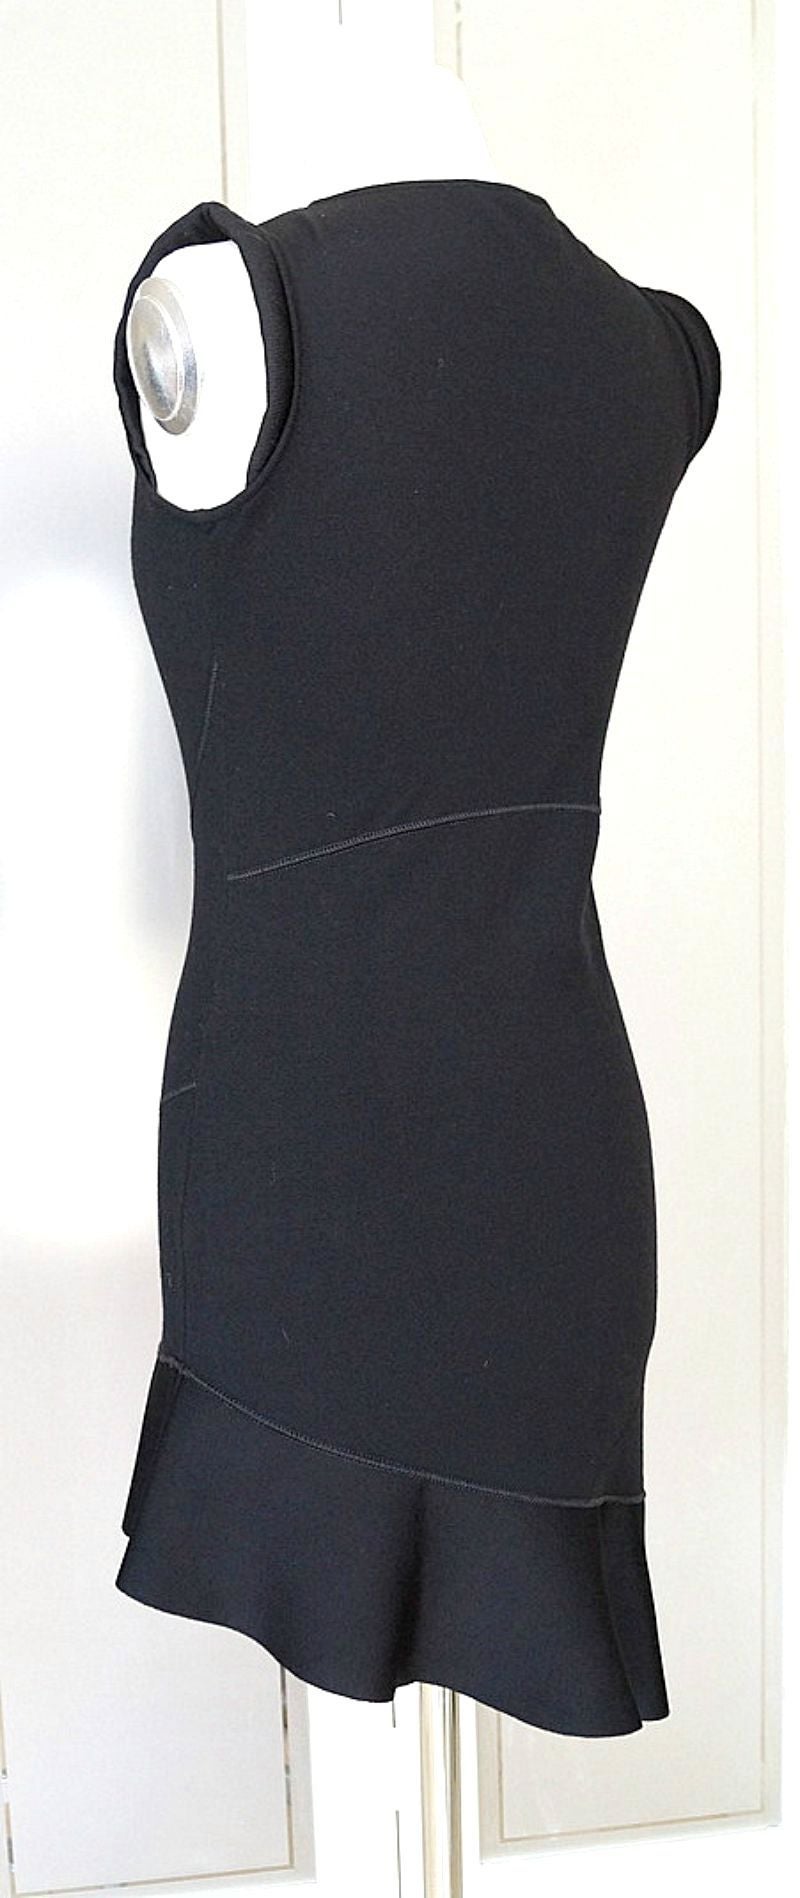 Garantiert authentisch Valentino fabelhaften schwarzen Kleid mit tollen Nähten Detail und schrägen Rüschen Saum.  
Die Ärmel sind mit einem Strukturdetail aus gerolltem Stoff versehen.
Die rechte Taille ist leicht gerafft und hat den gleichen